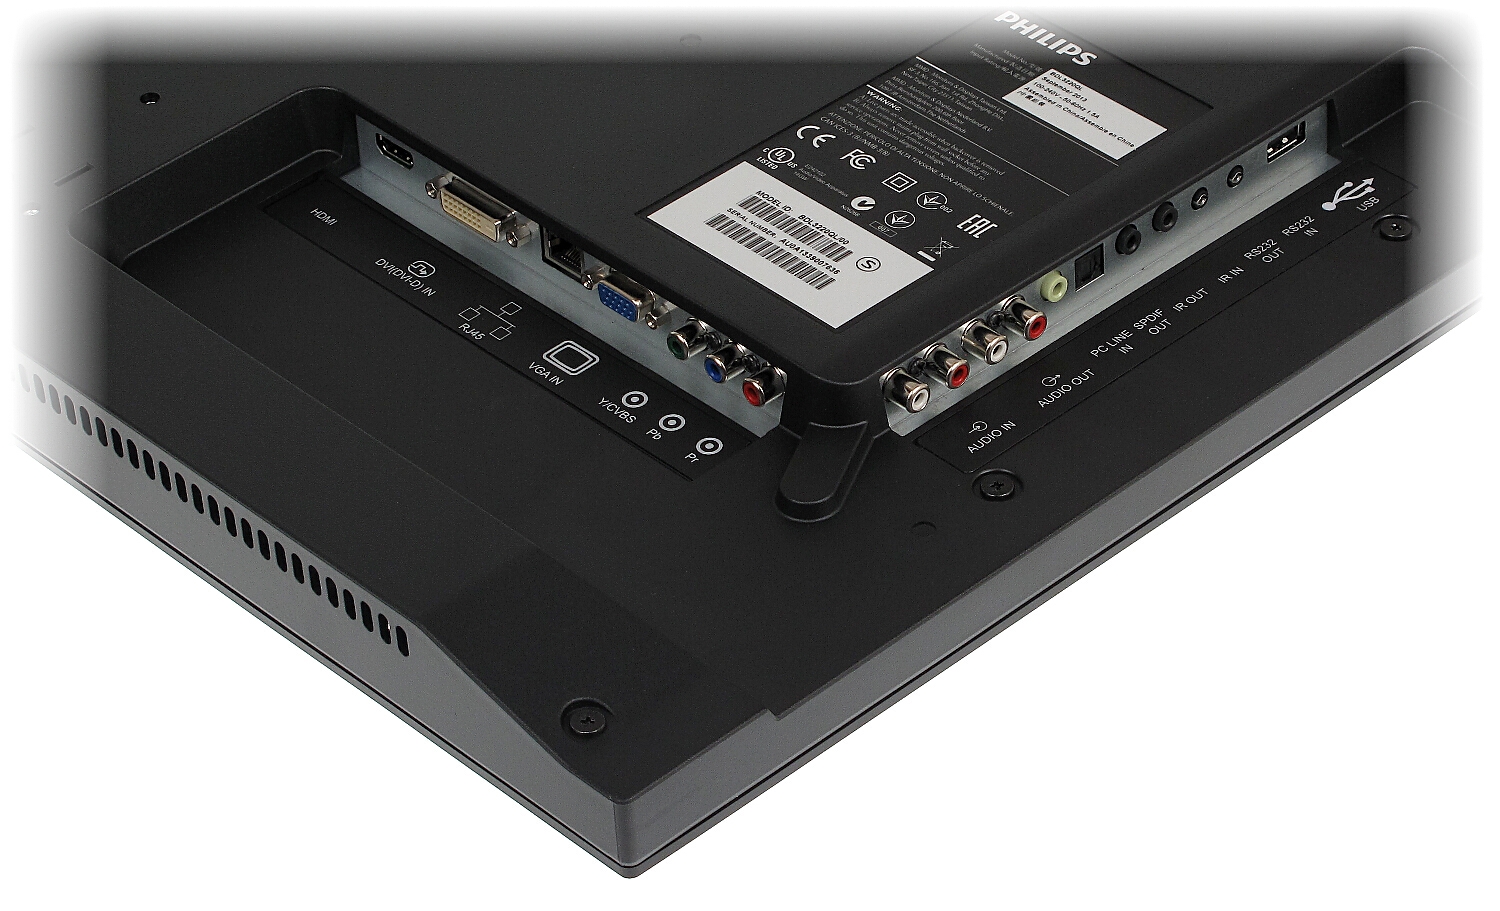 ECRAN PHILIPS HDMI, VGA, DVI, YPbPr, AUDIO BDL-3220QL ... - Moniteurs LCD -  Delta